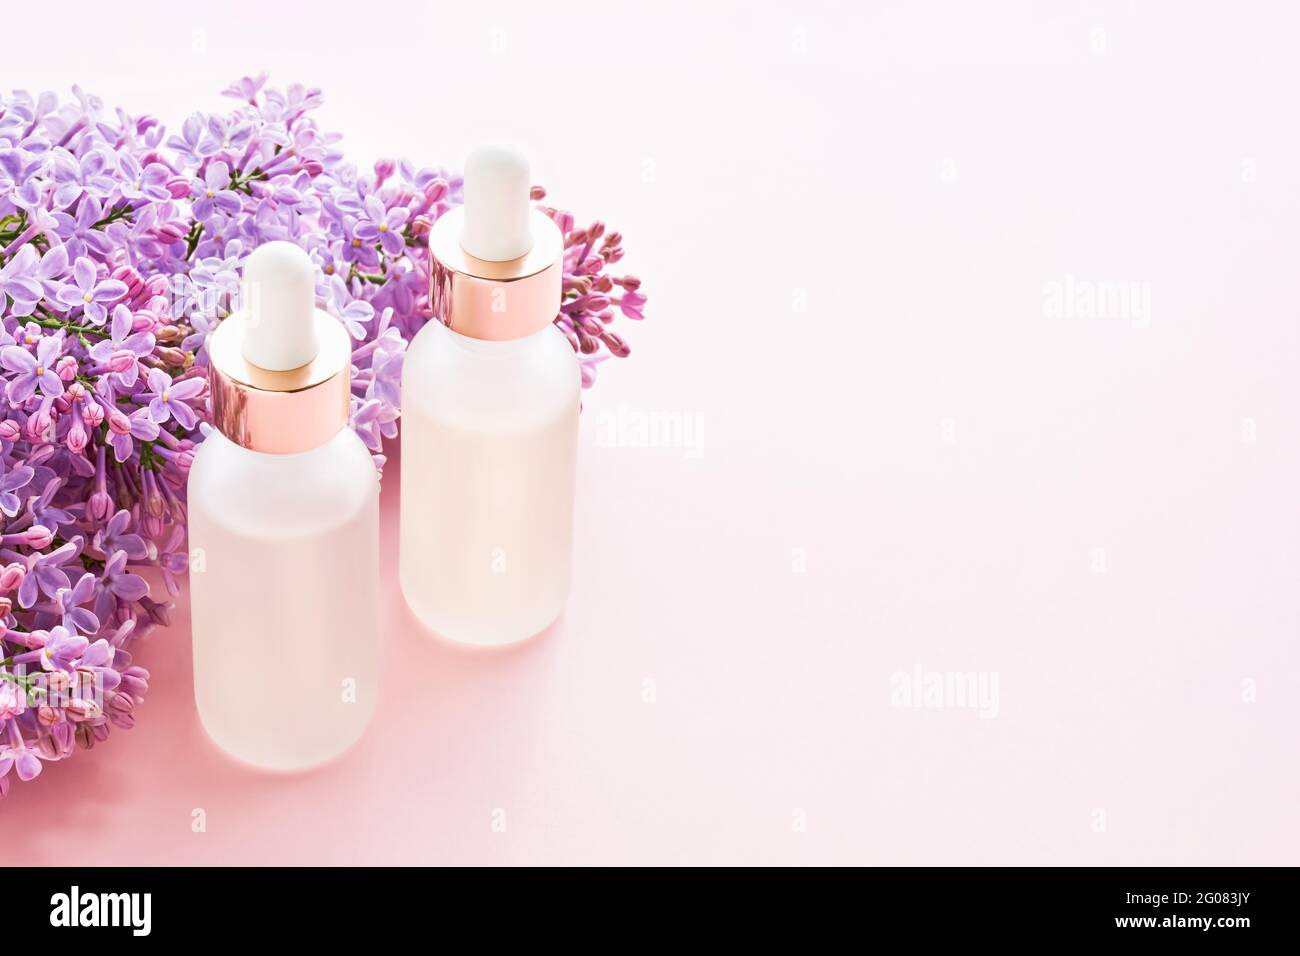 Flacons compte-gouttes en verre à usage médical et cosmétique et fleurs de lilas sur fond rose. Concept SPA. Copier l'espace pour le texte Banque D'Images